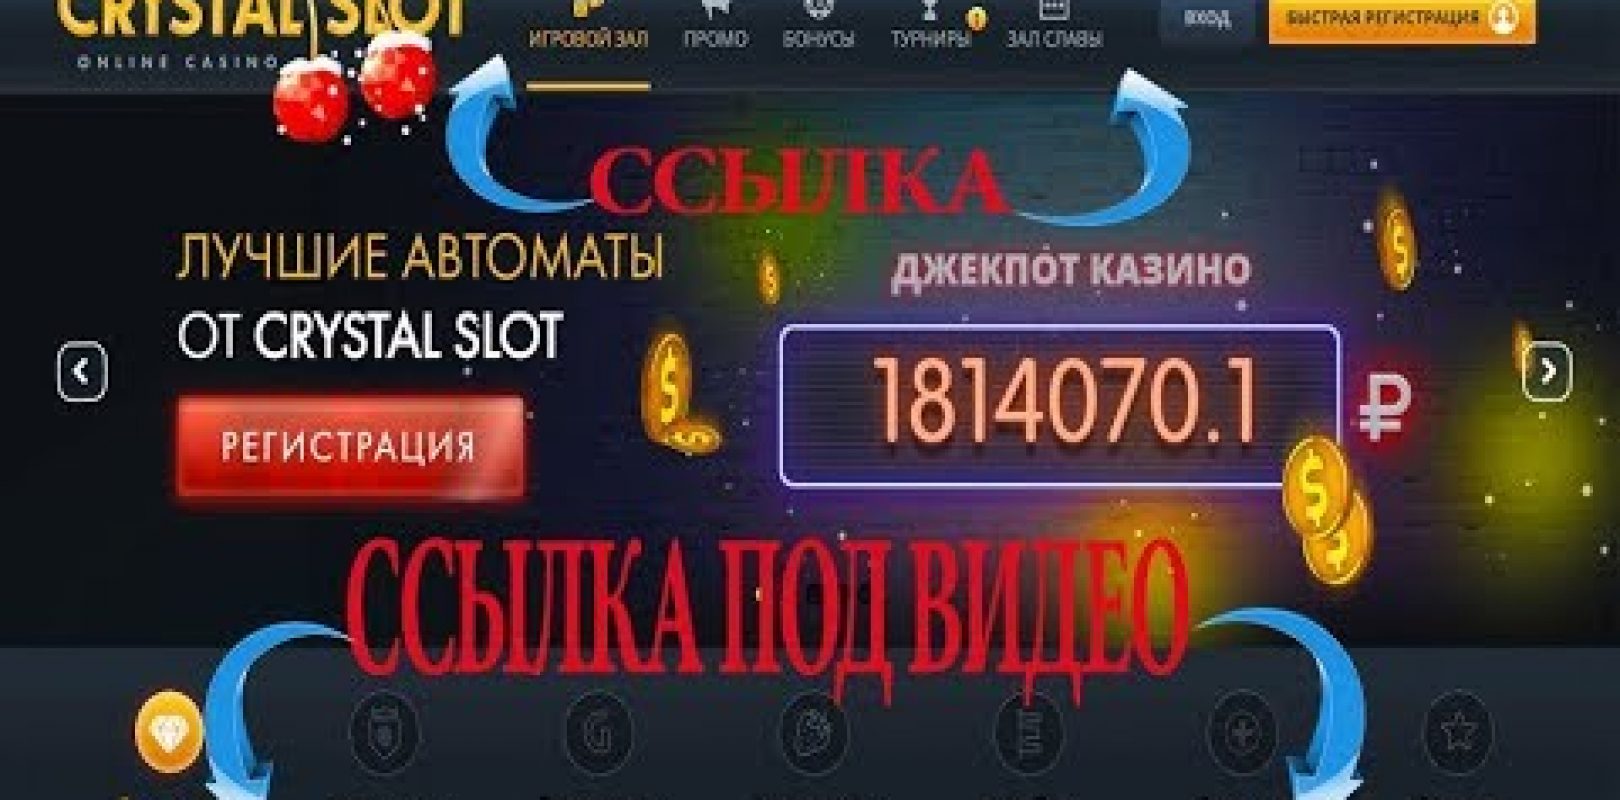 Slot vegas casino online